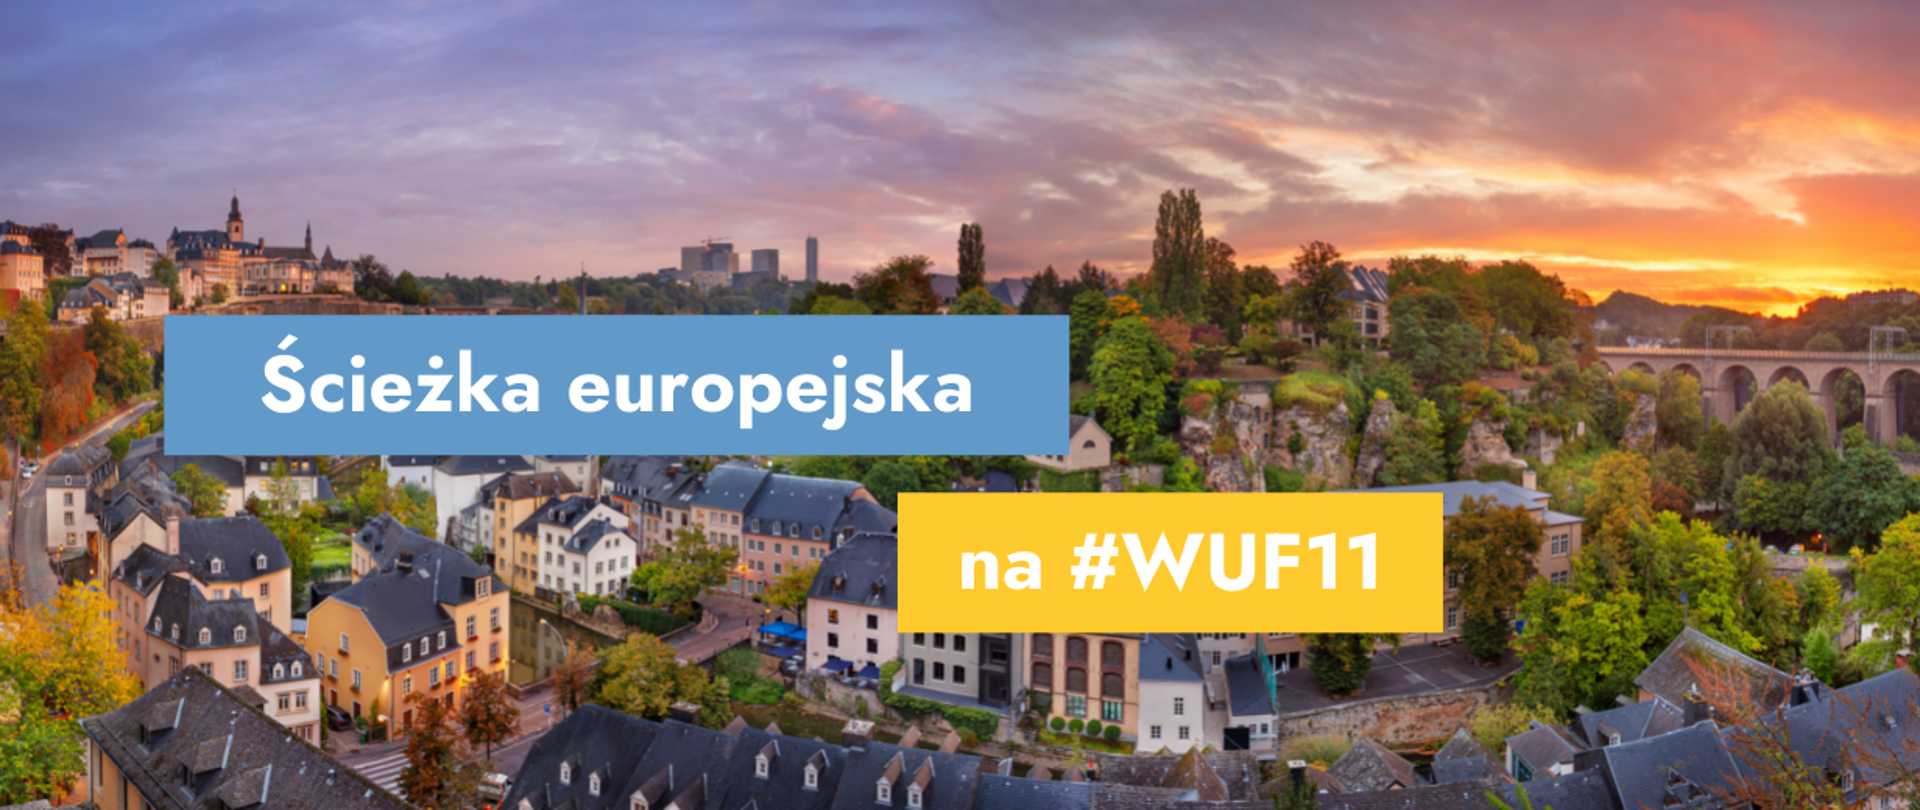 Na grafice zdjęcie miasta oraz tekst: Ścieżka europejska na #WUF11.